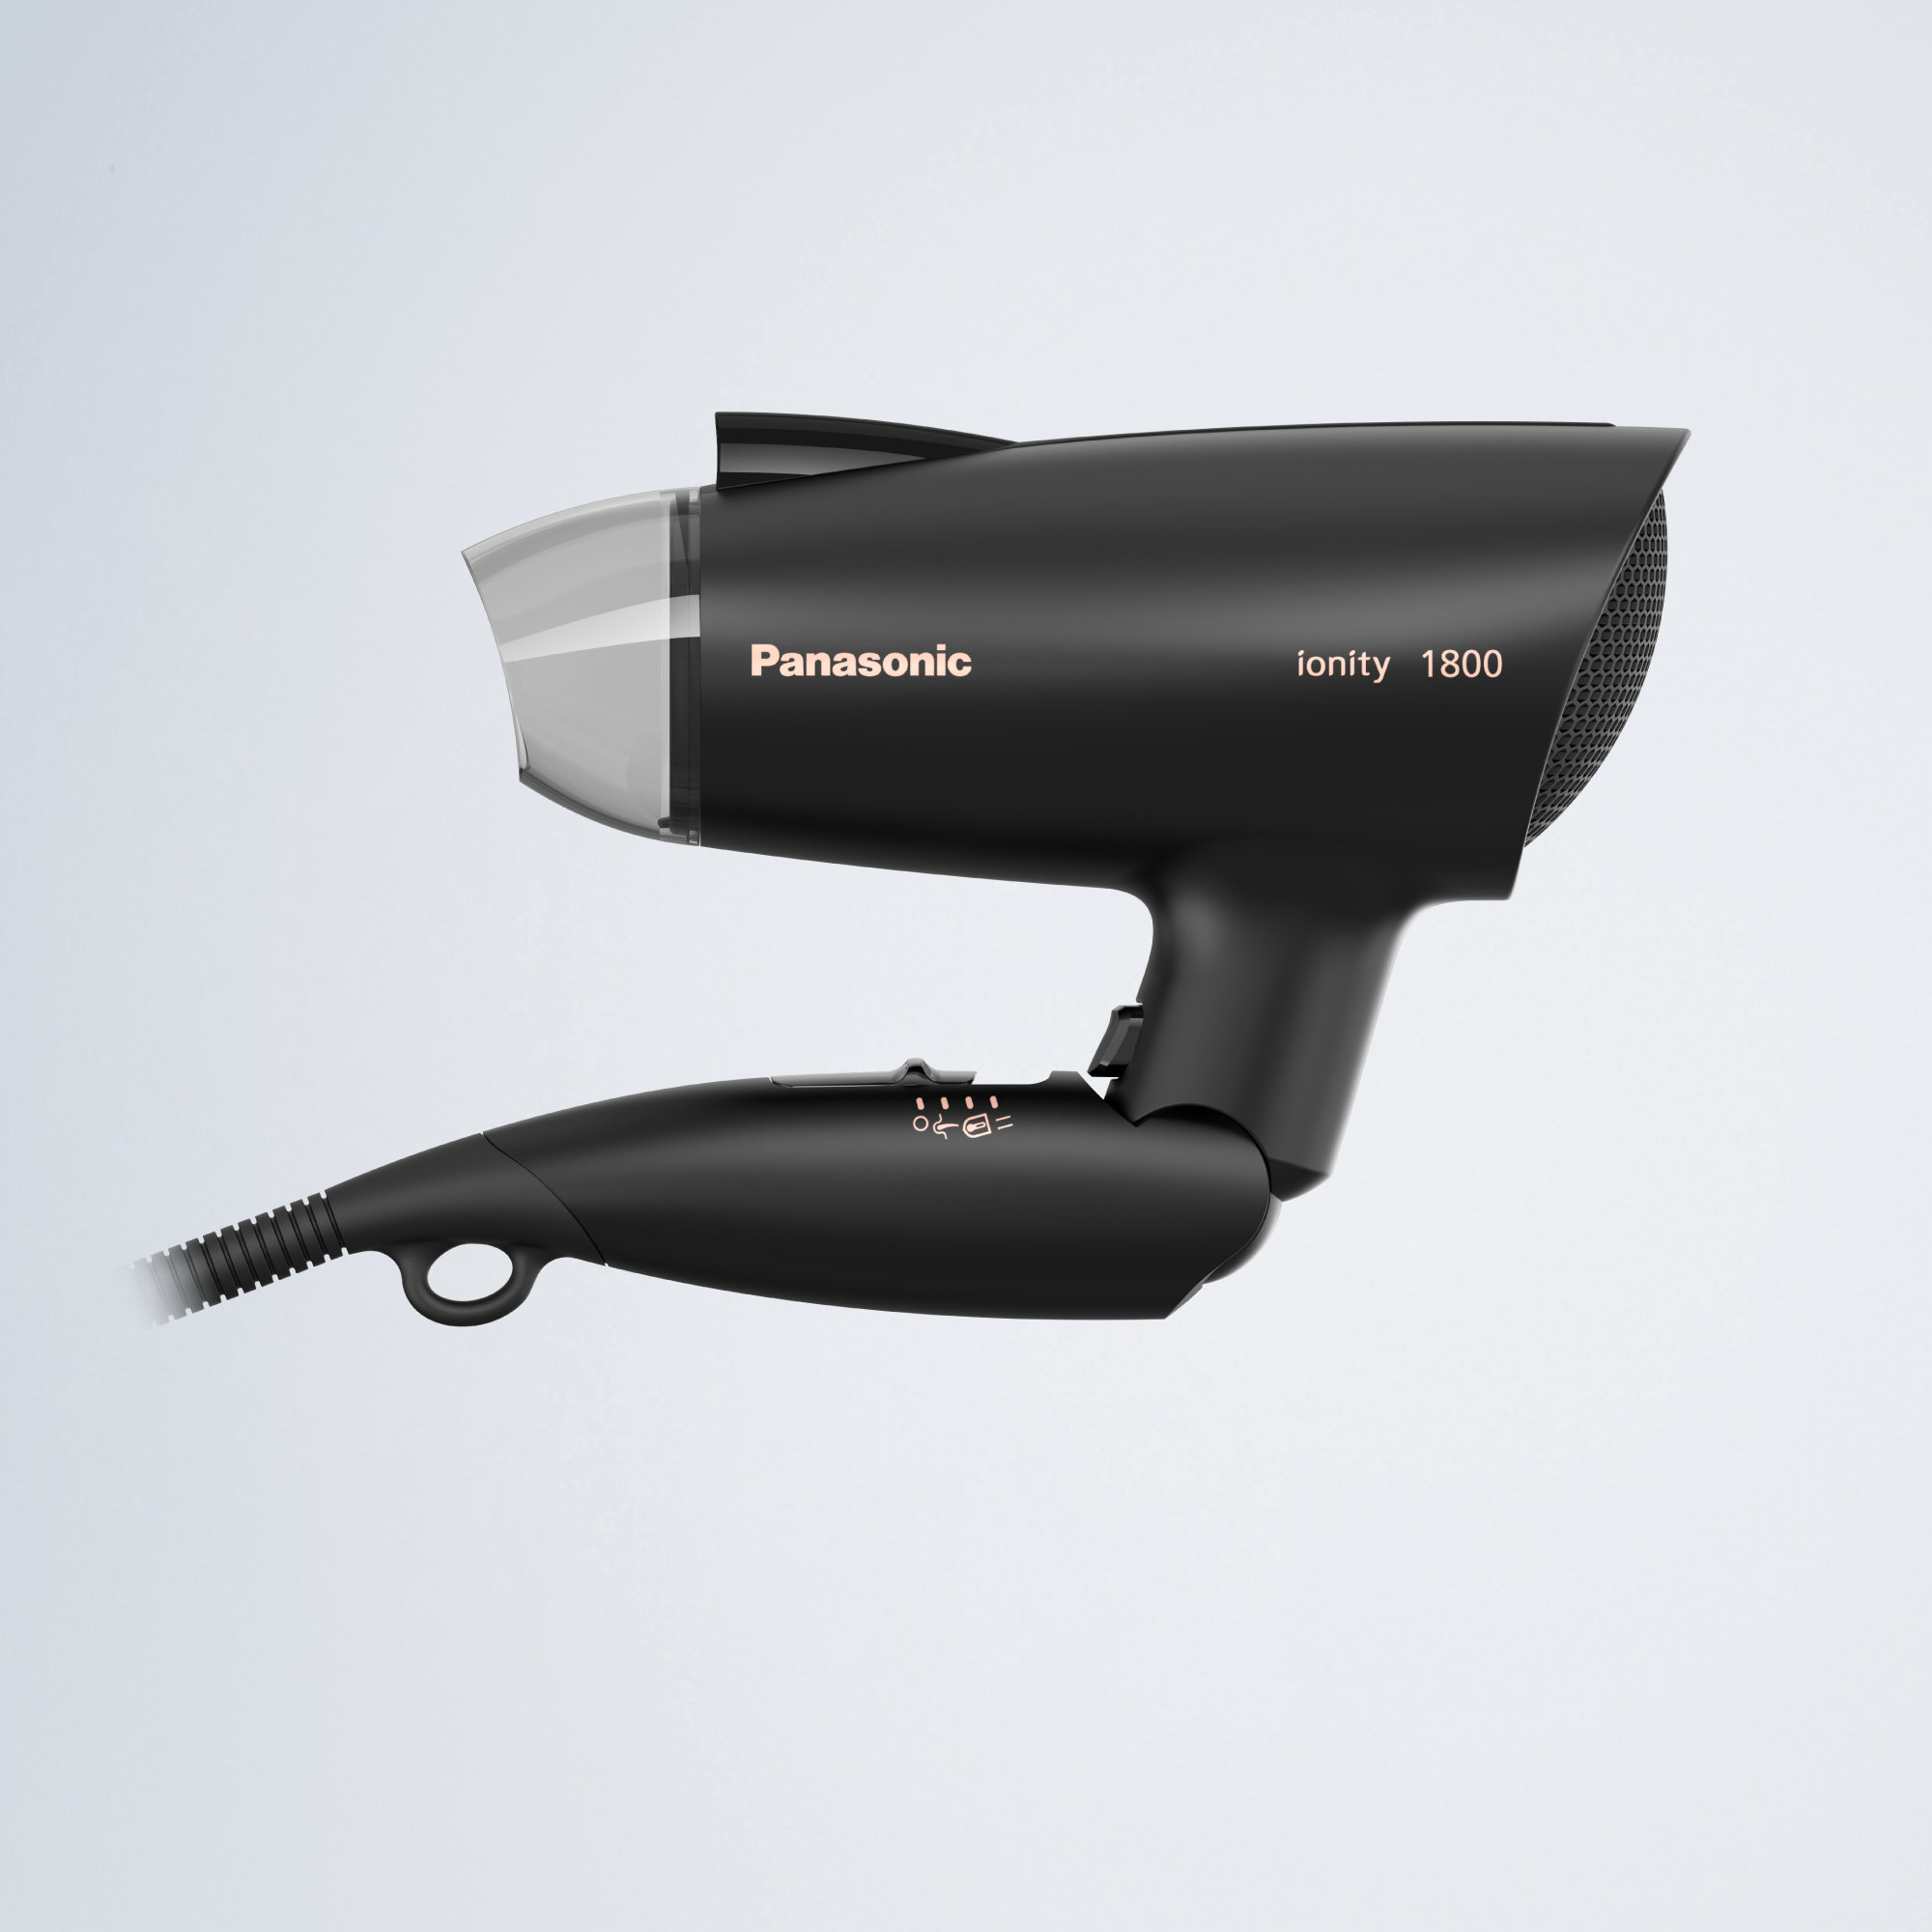 Máy sấy tóc Panasonic EH-ND37-K645 - Sấy nhanh với hiệu quả tương đương 2000W - Chế độ chăm sóc da đầu, bảo vệ nhiệt - Hàng Chính hãng